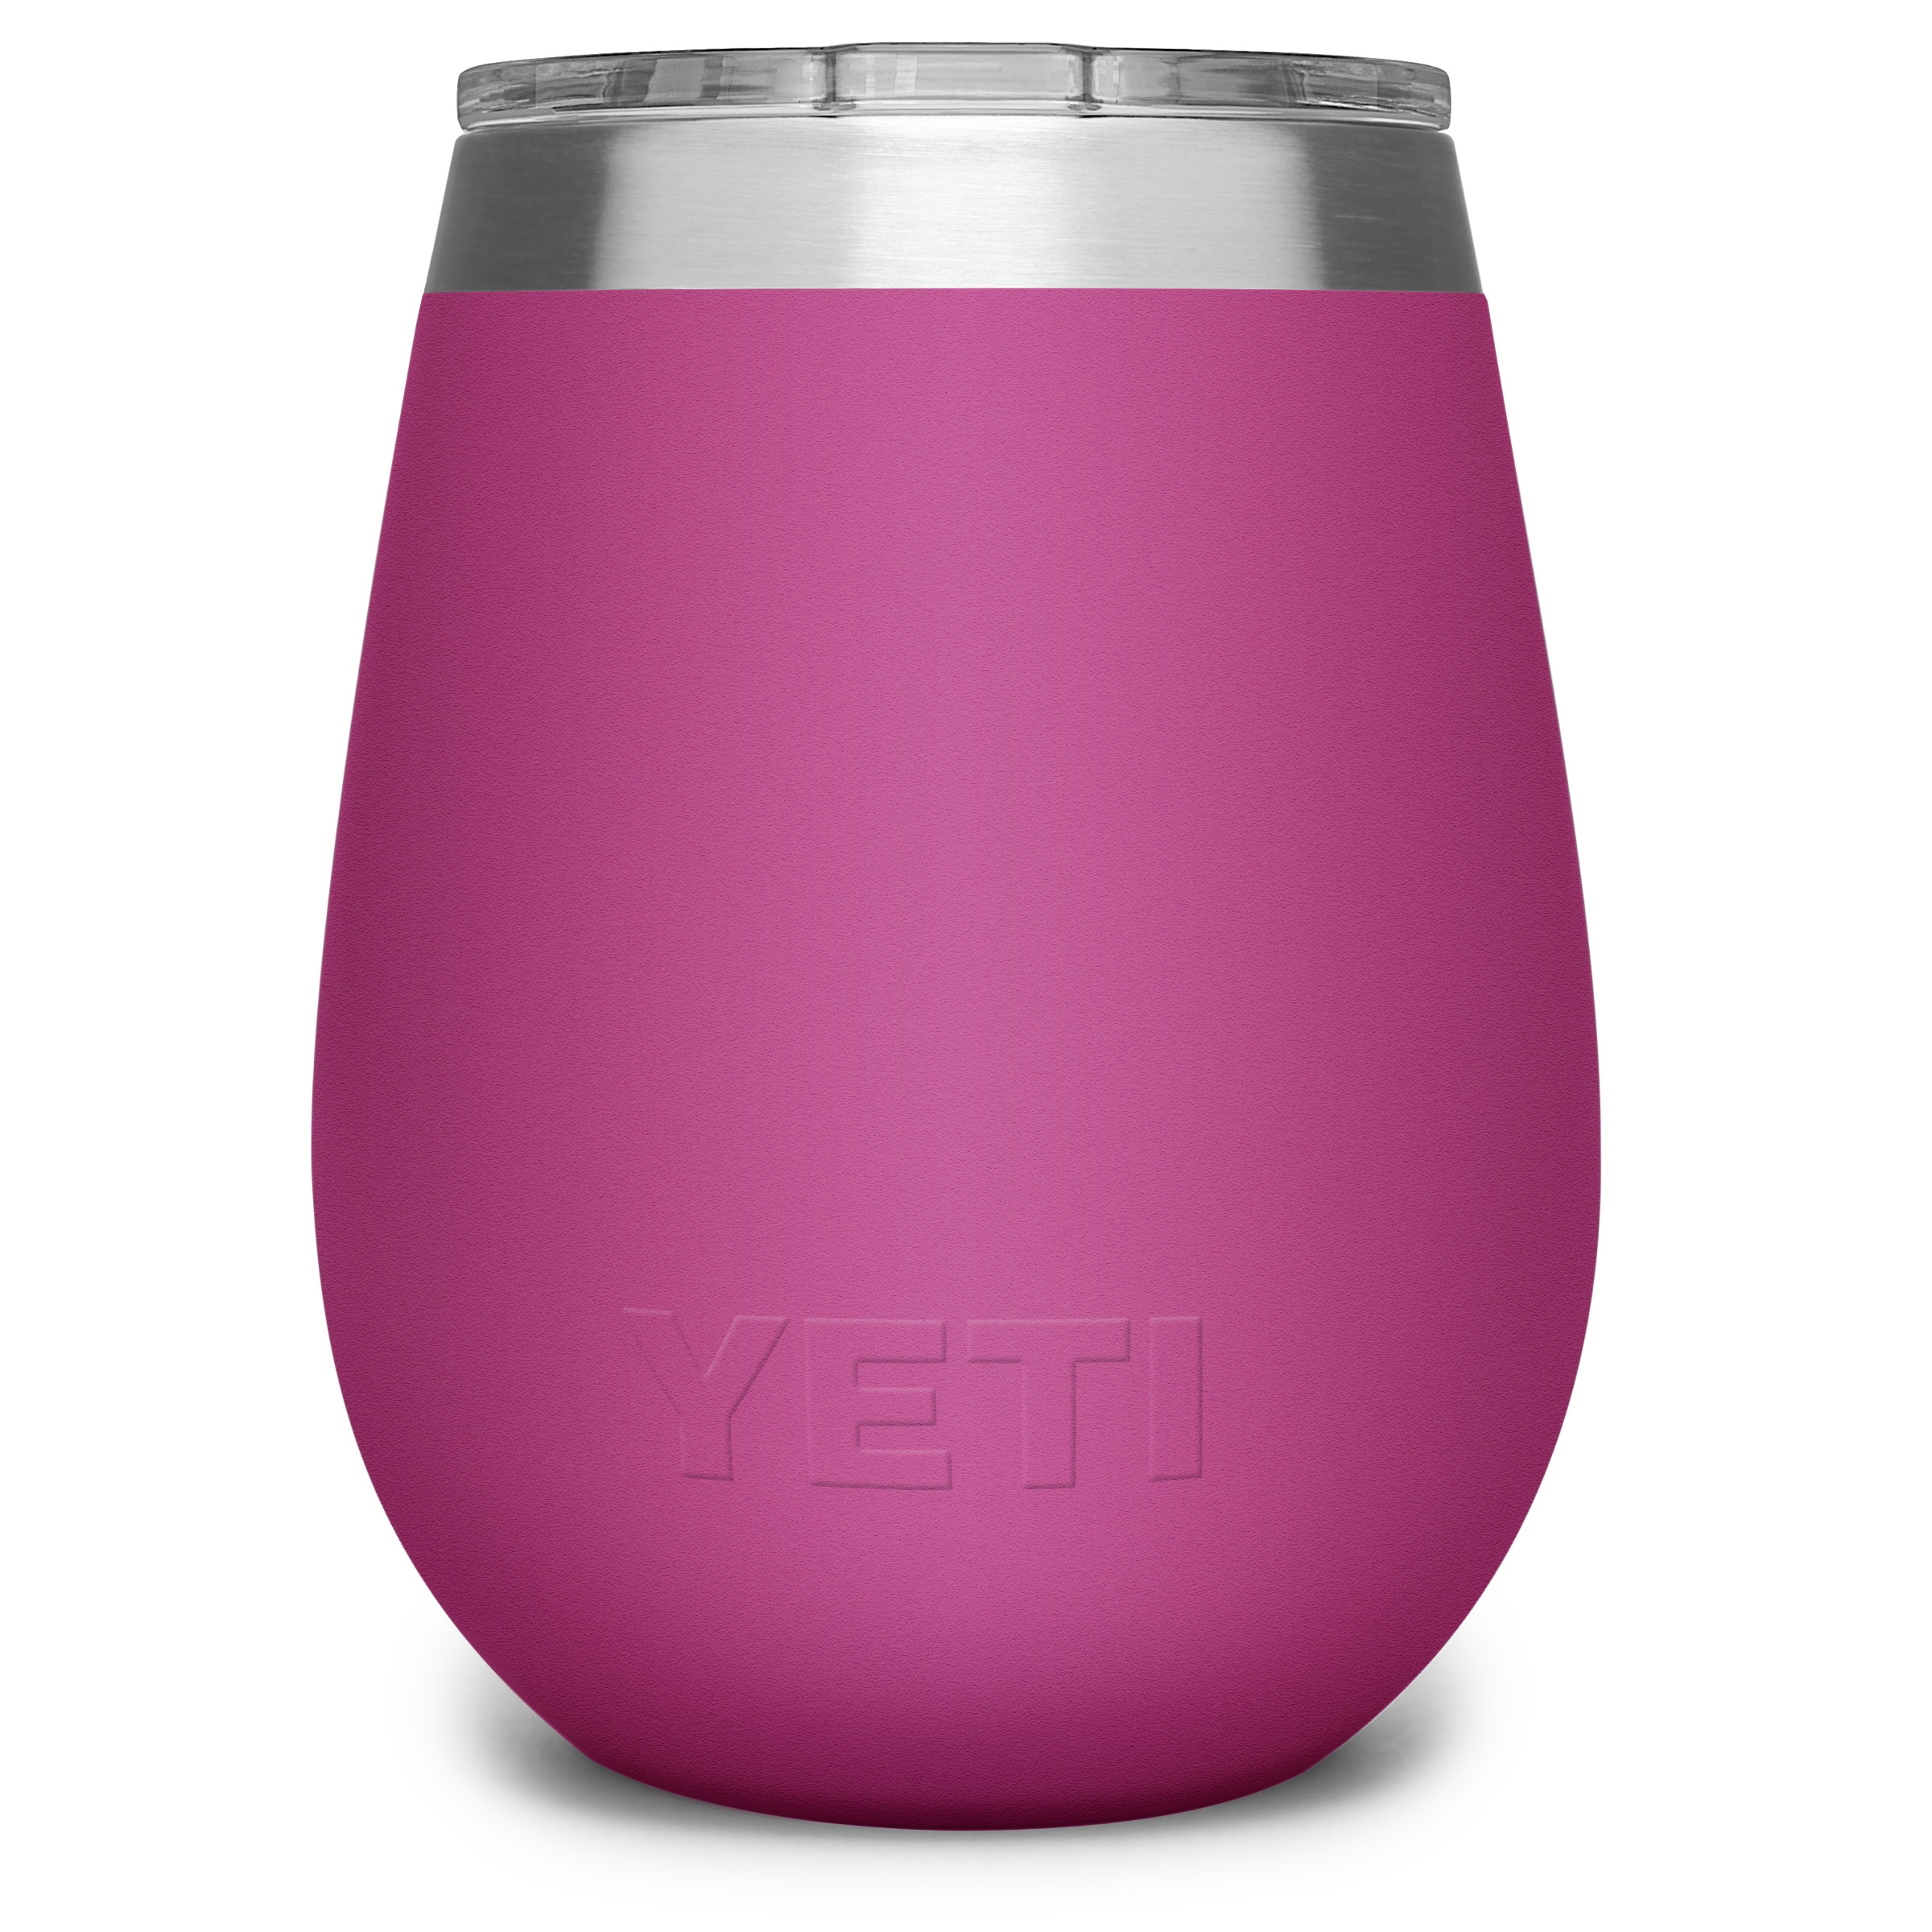 Yeti - 10 oz Rambler Wine Tumbler Power Pink